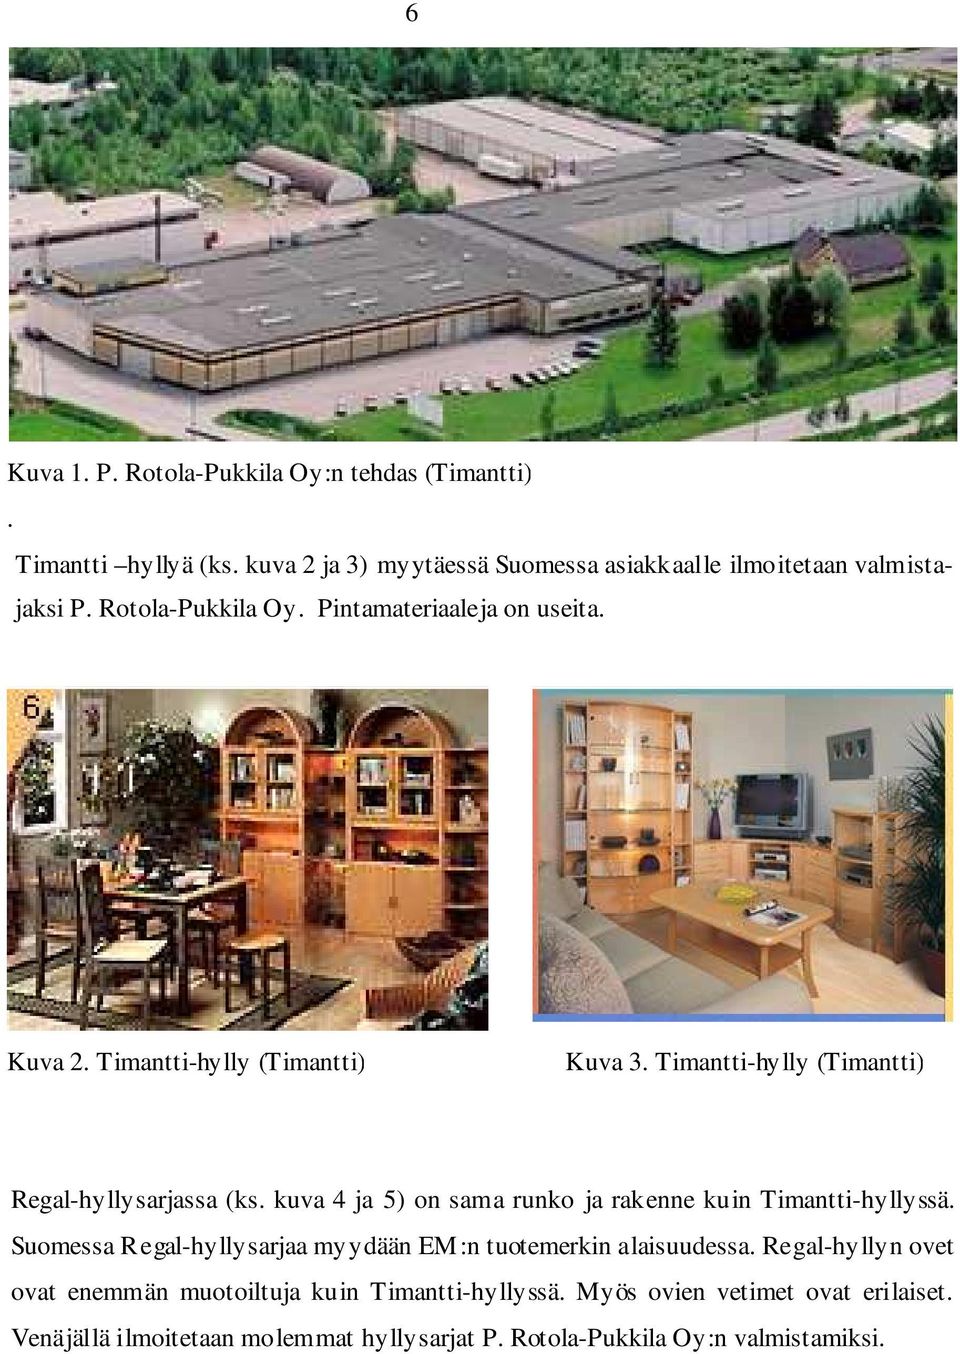 kuva 4 ja 5) on sama runko ja rakenne kuin Timantti-hyllyssä. Suomessa Regal-hyllysarjaa myydään EM:n tuotemerkin alaisuudessa.